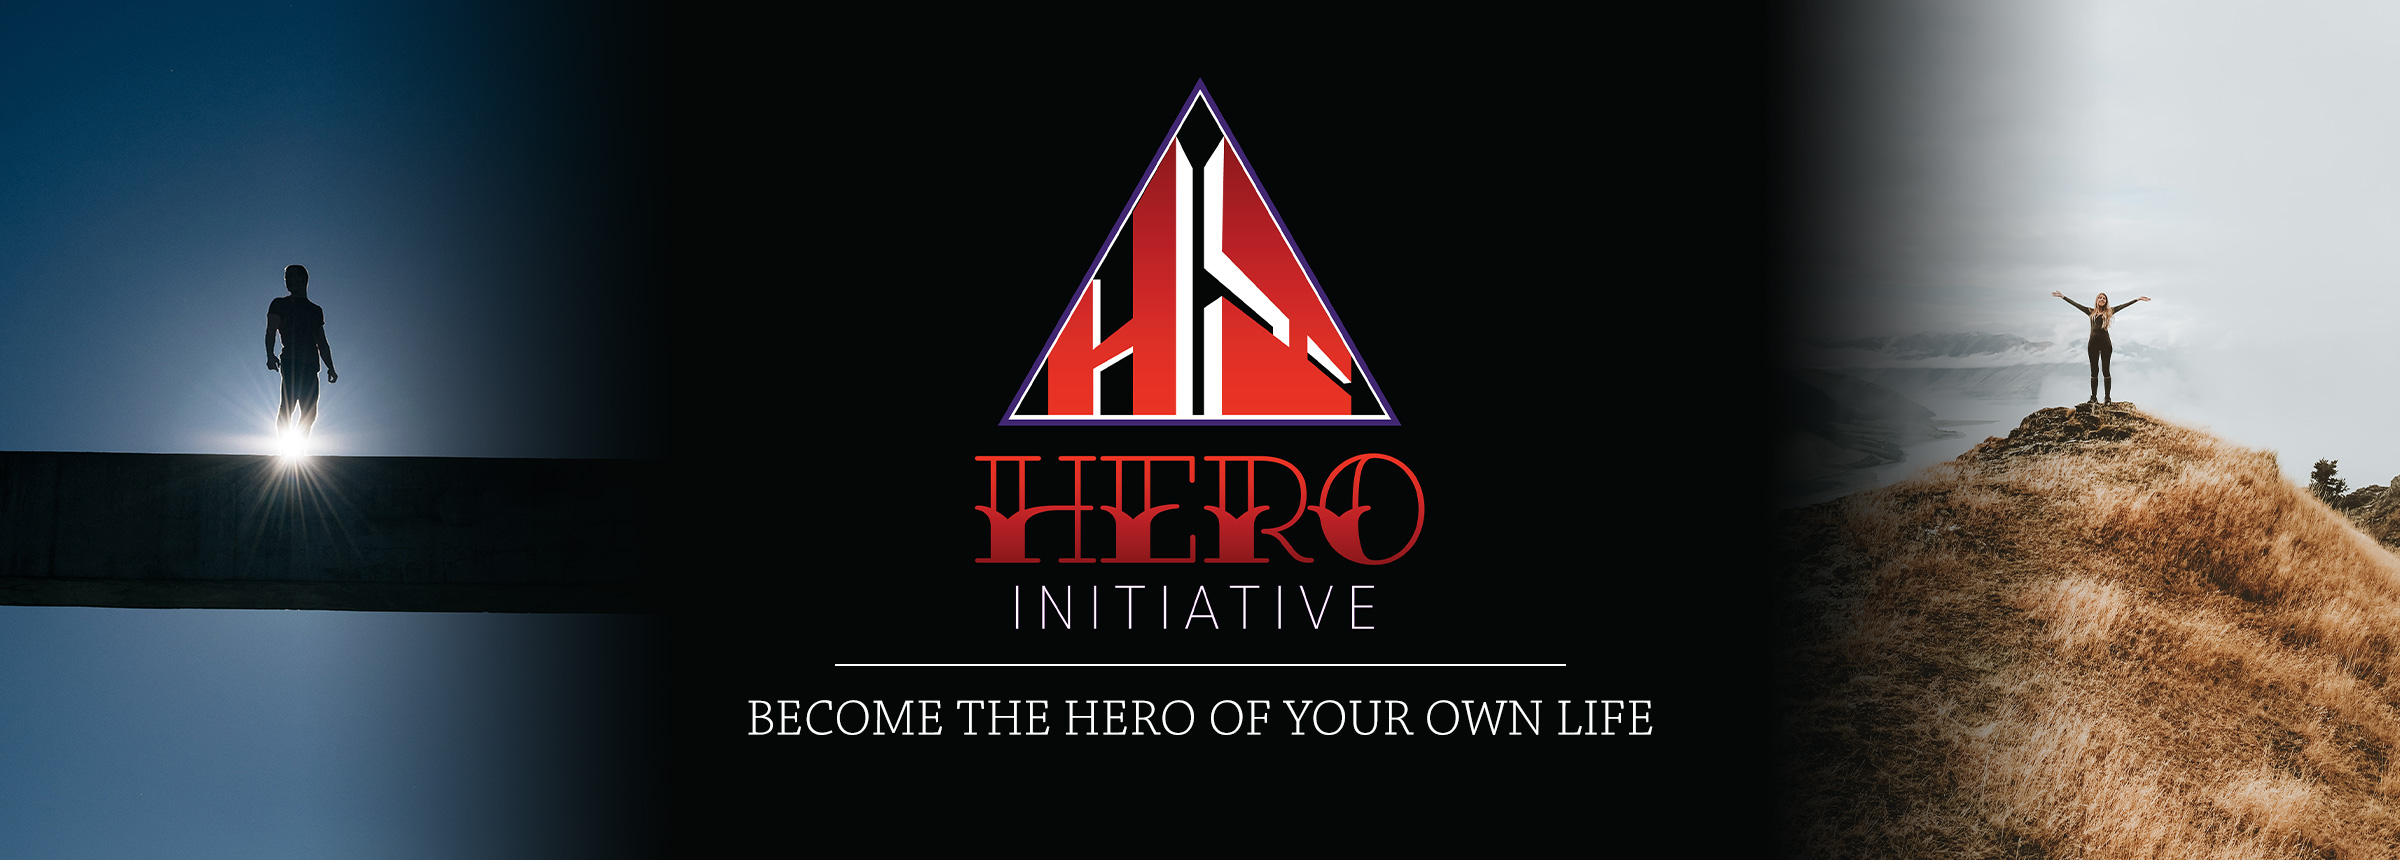 hero-initiative-cover-v2